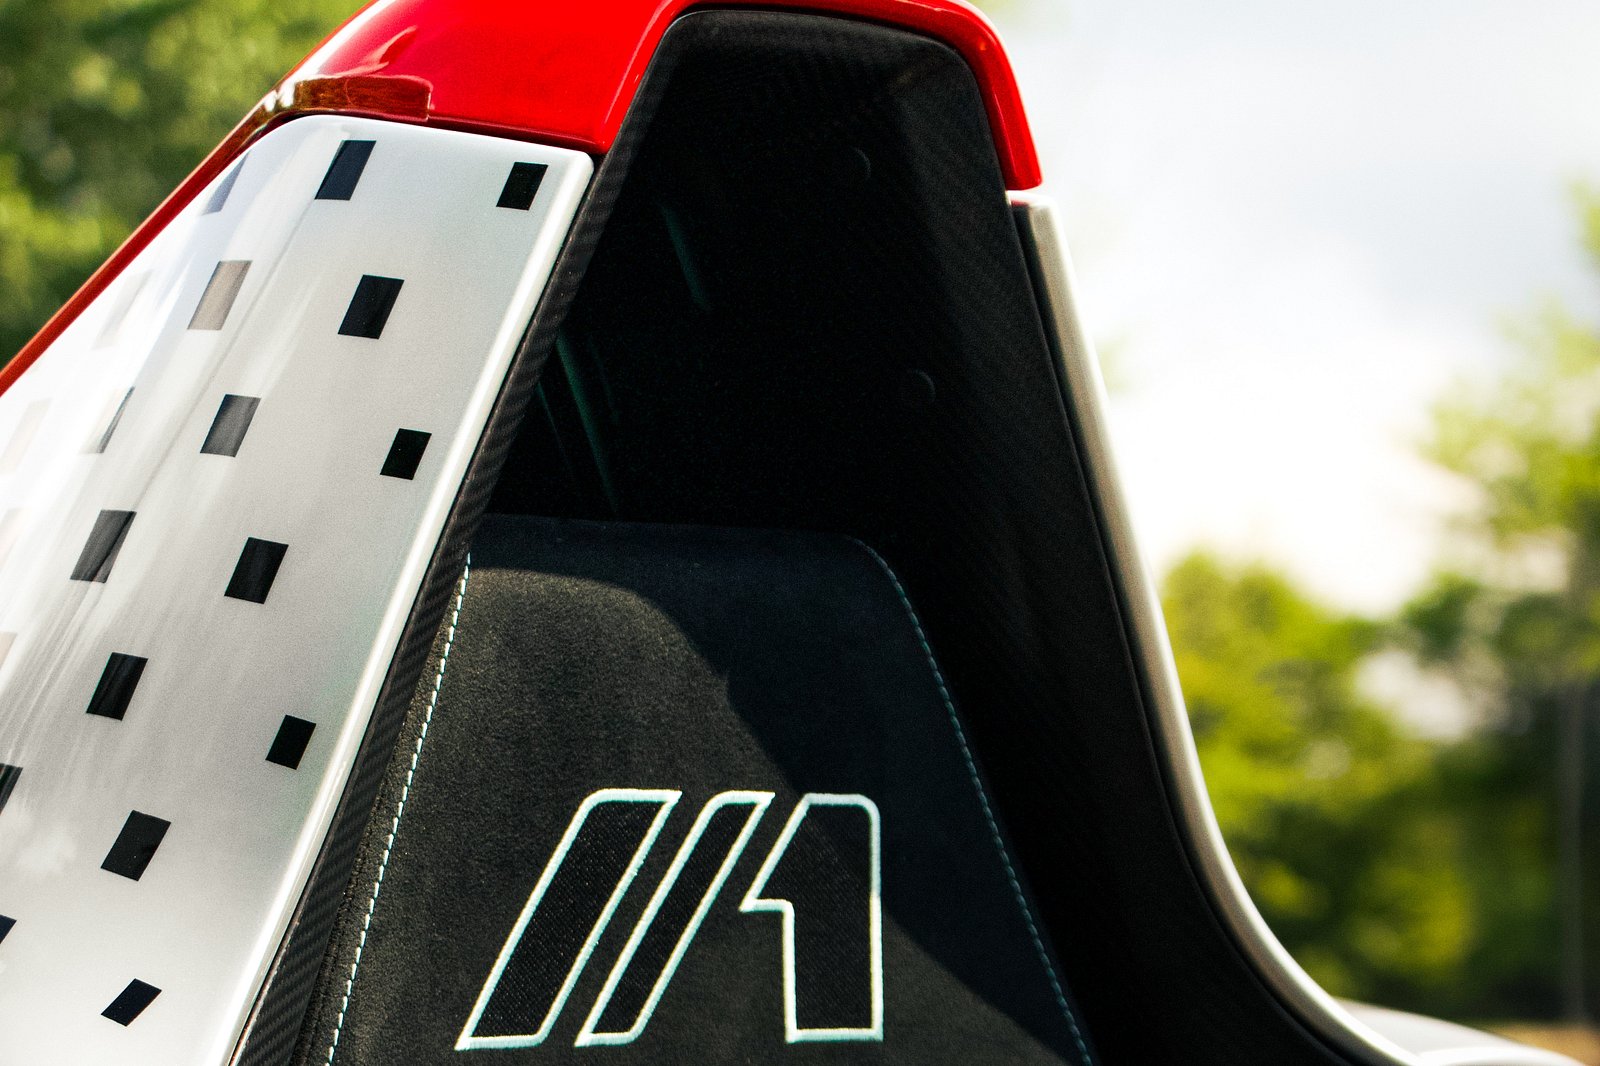 Владелец этого автомобиля прилетел на завод BAC в Ливерпуле, Англия, чтобы отформовать сиденье Mono в соответствии с его точными размерами и изгибами, как это сделал бы гонщик Формулы-1. Рулевое колесо, украшенное полуночным маркером ярко-красного цв